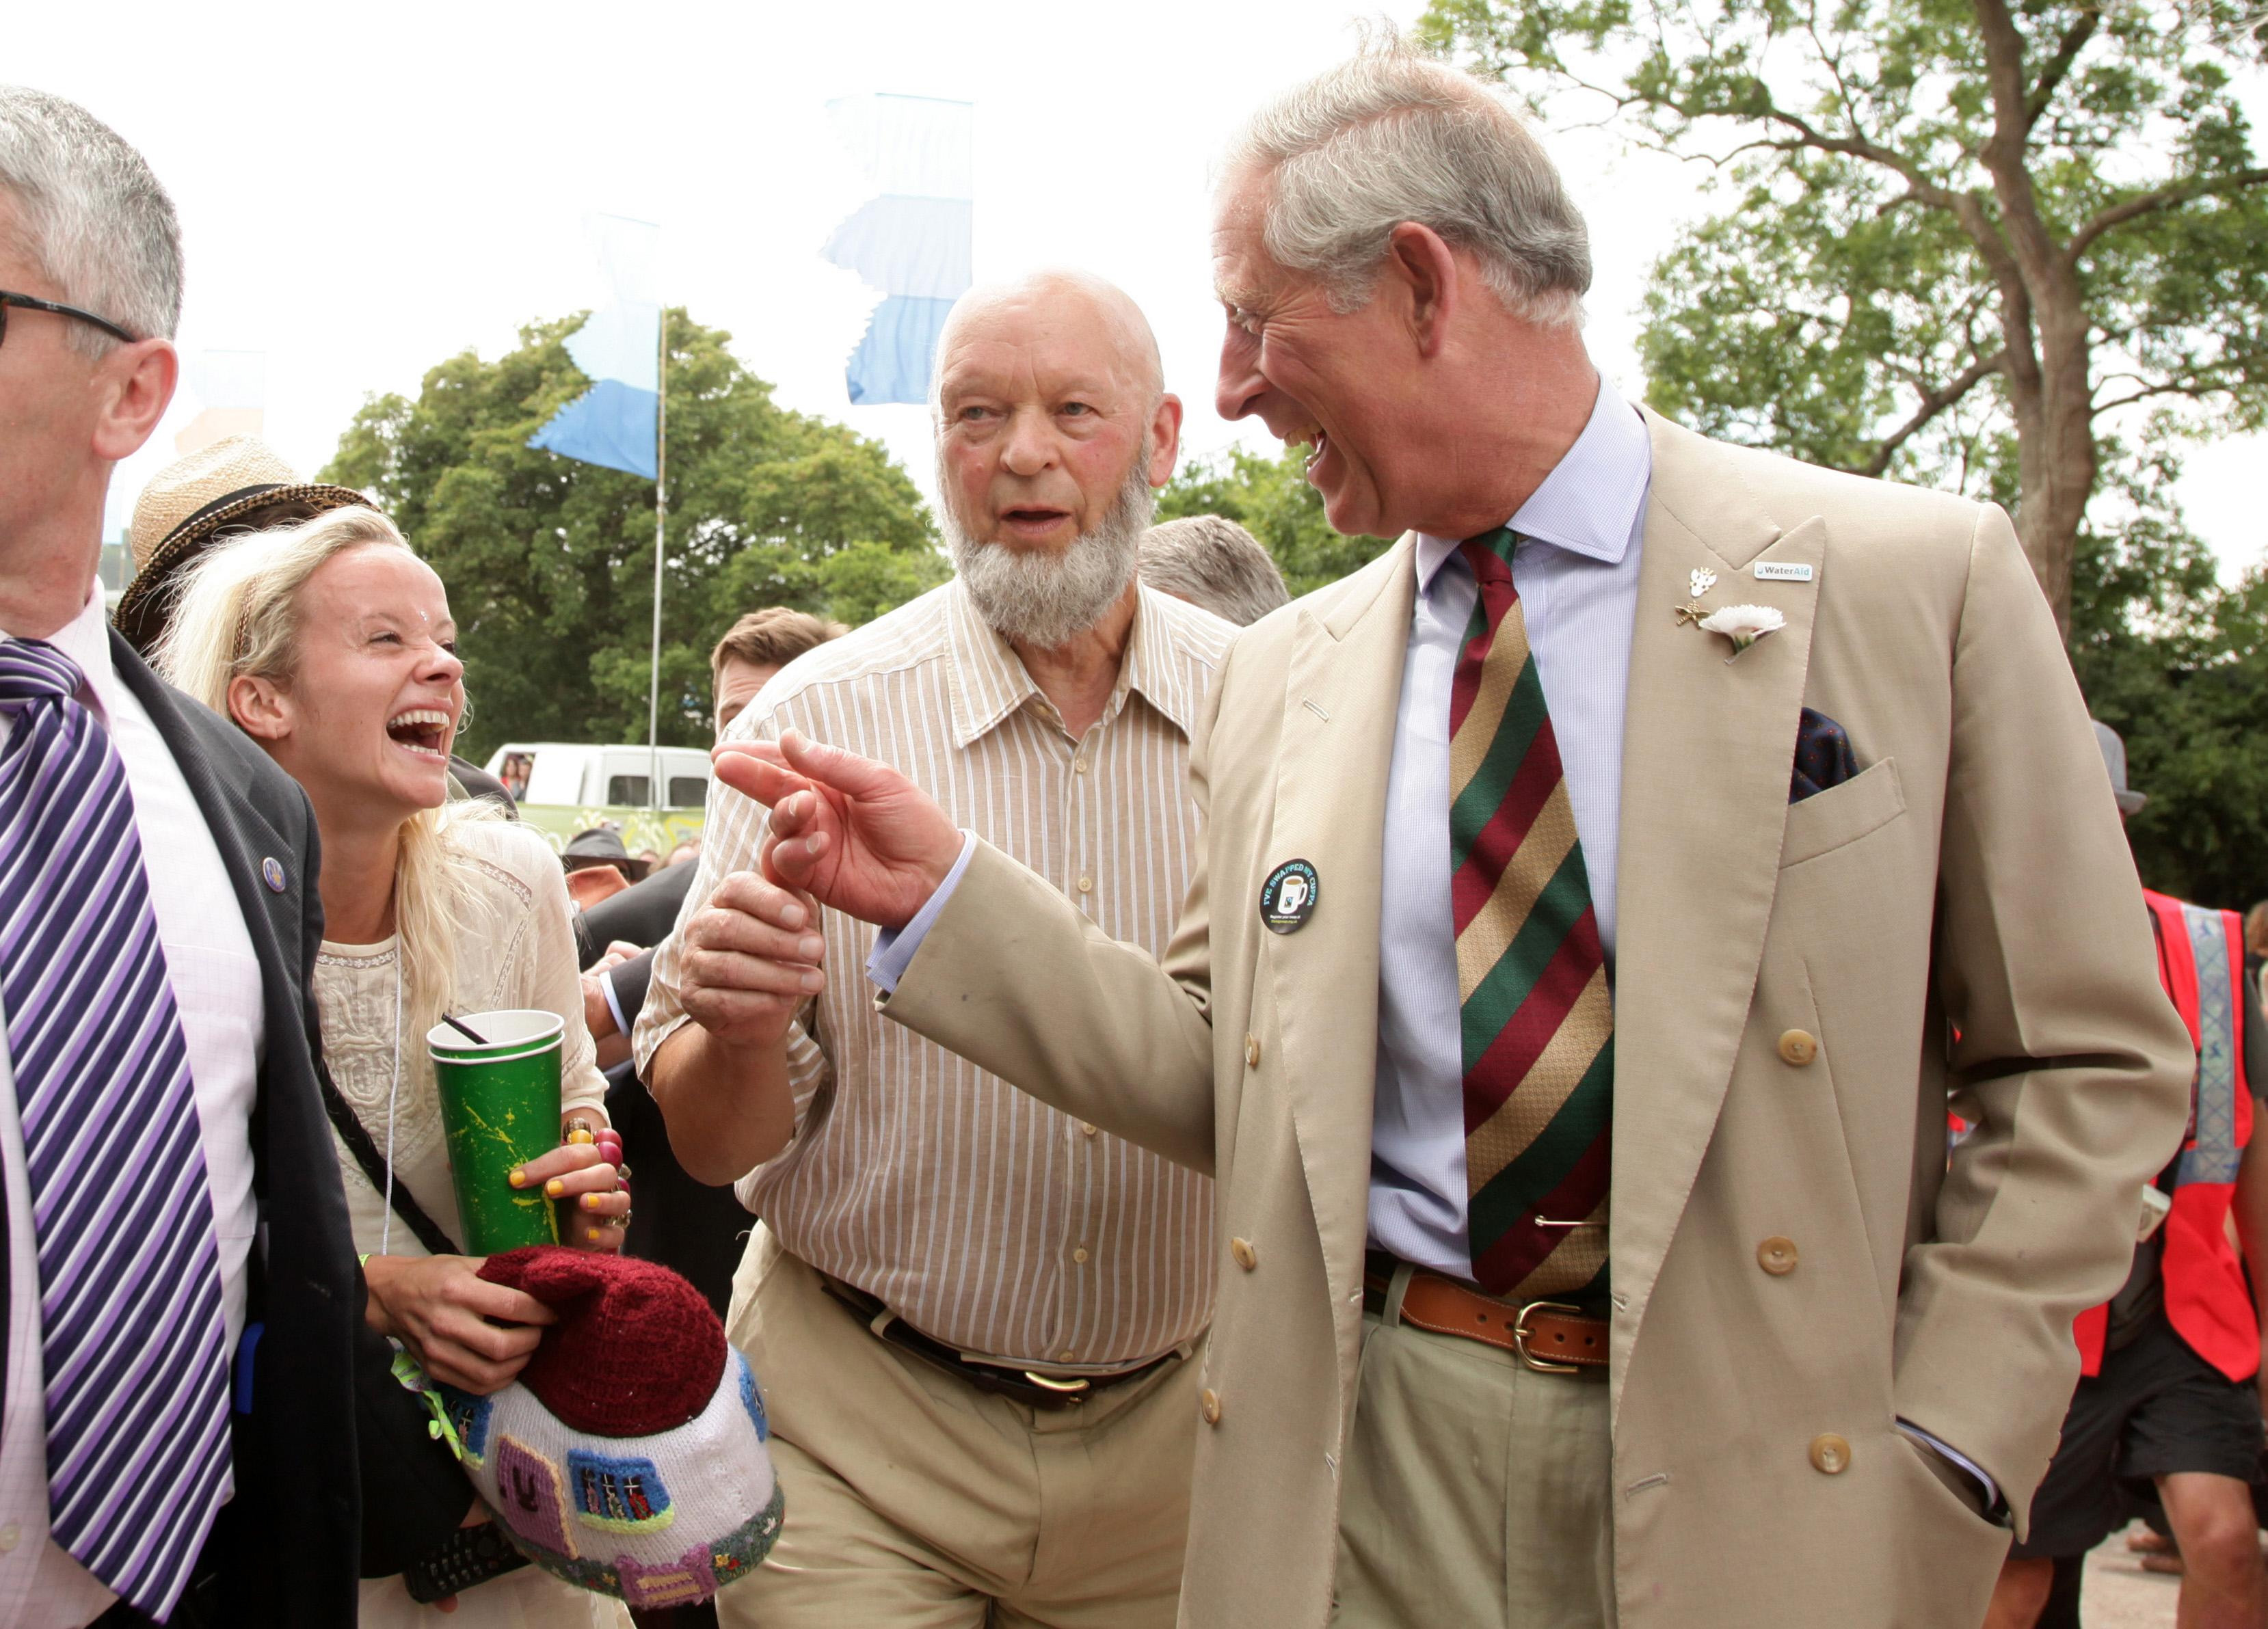 König Charles besuchte Glastonbury im Jahr 2010